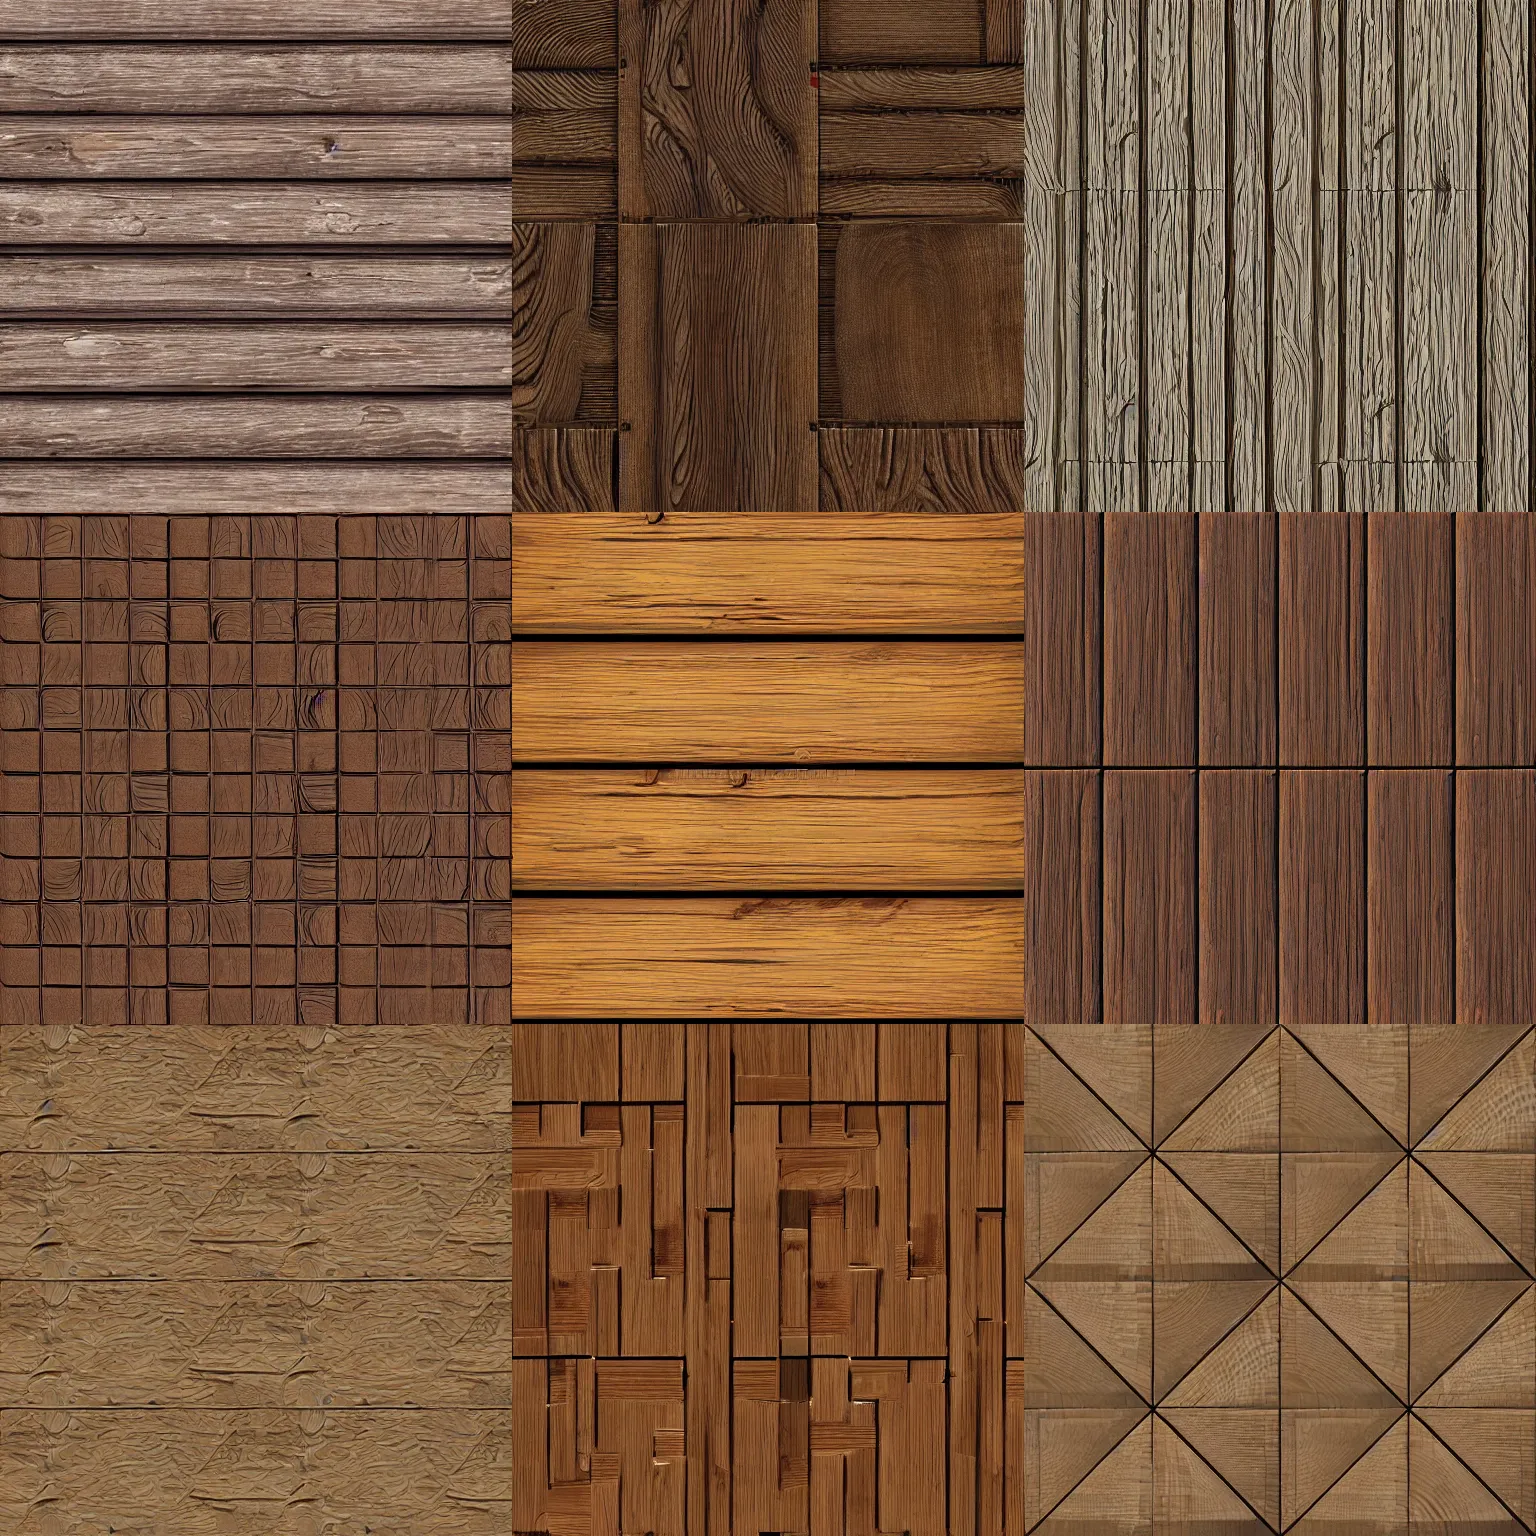 Tutorial: Pixel art wood floor texture 